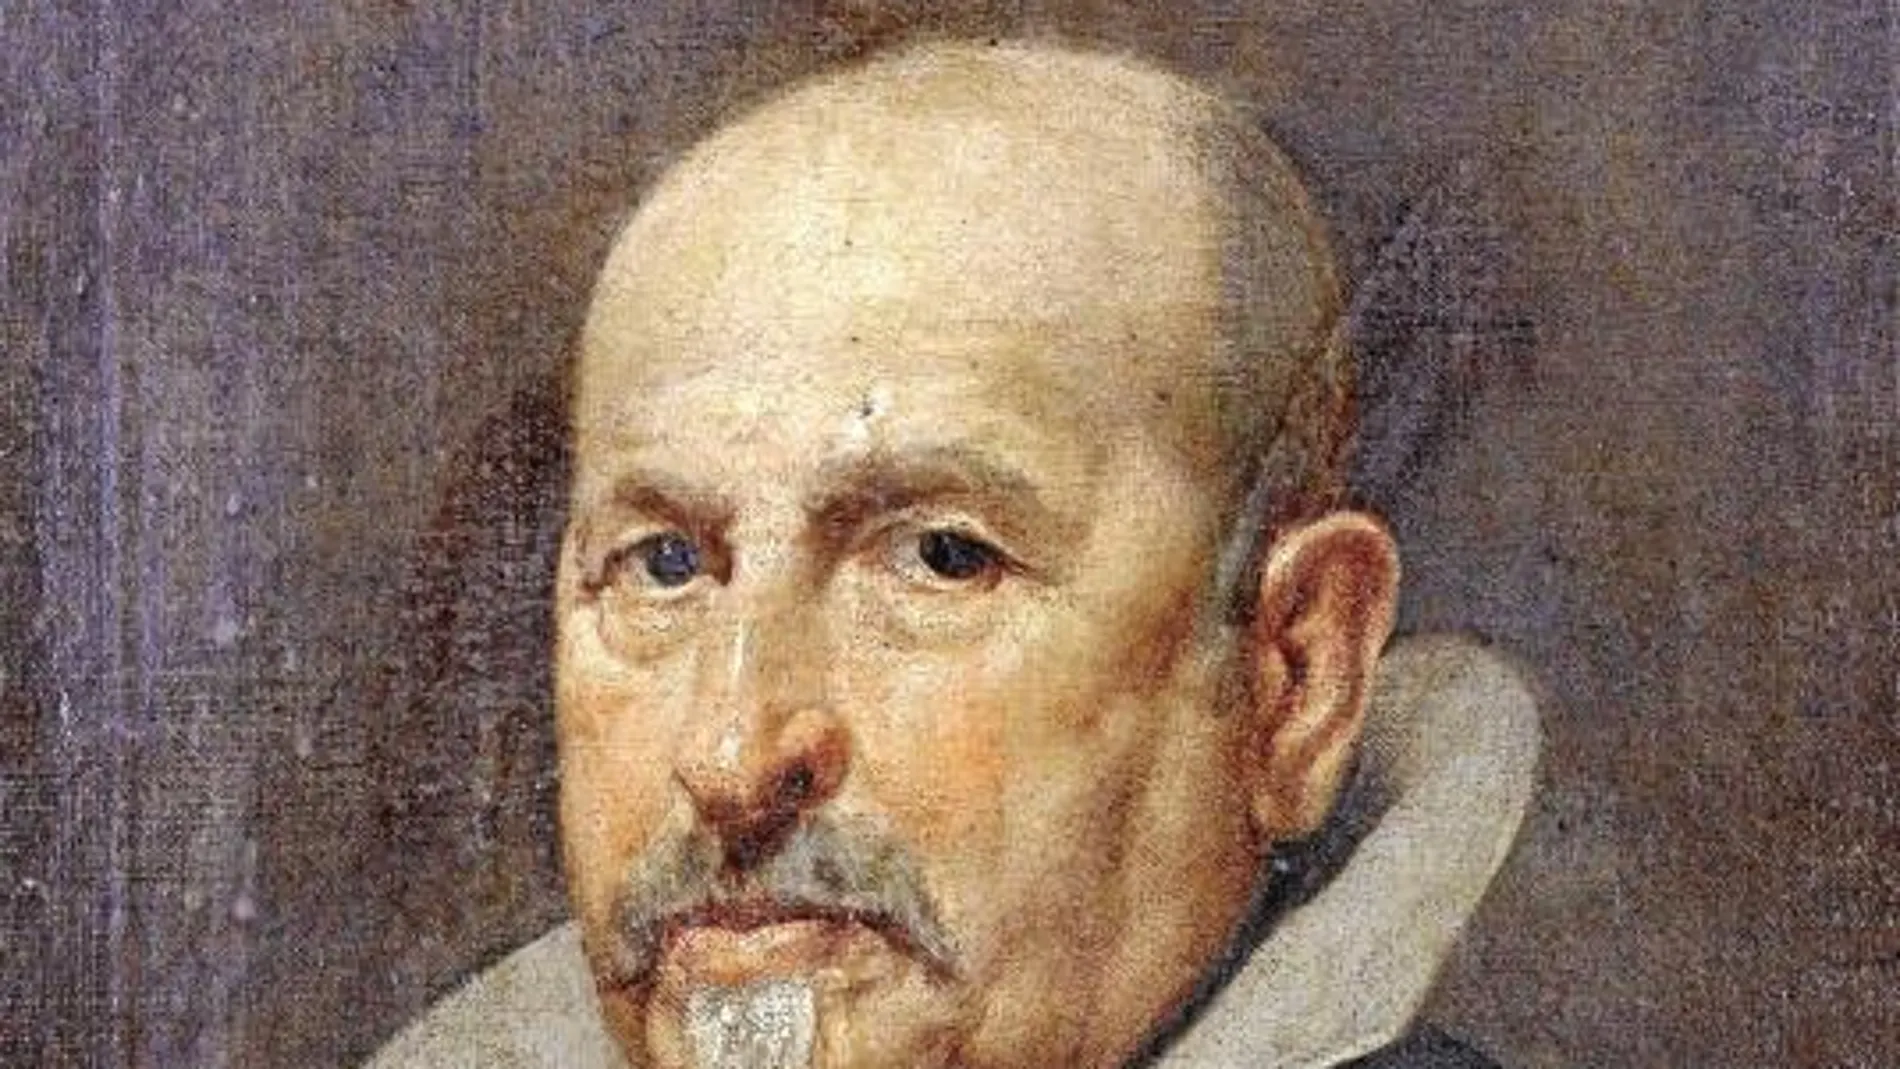 La obra fue pintada alrededor de 1632 y 1635